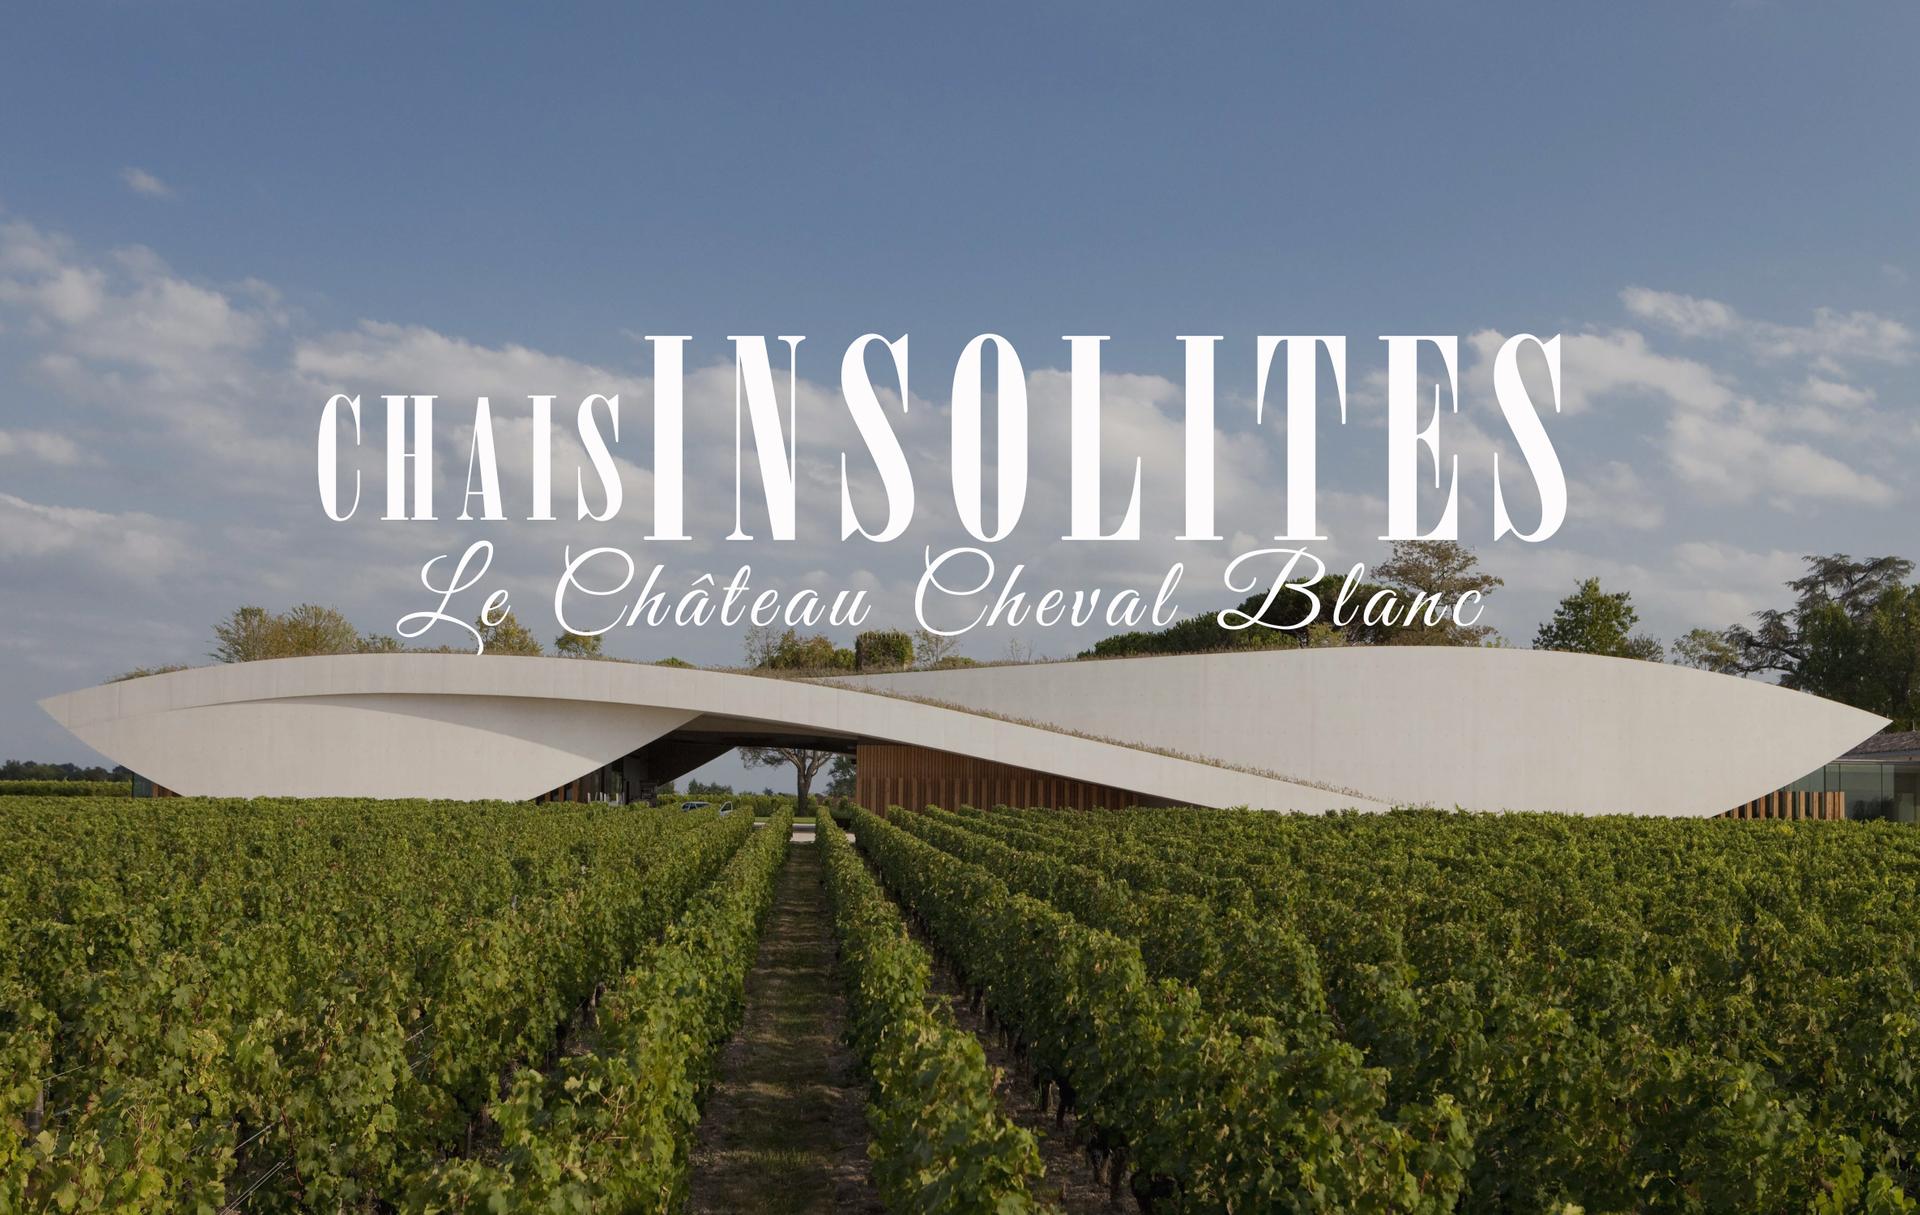 Chais insolites : Le Château Cheval Blanc